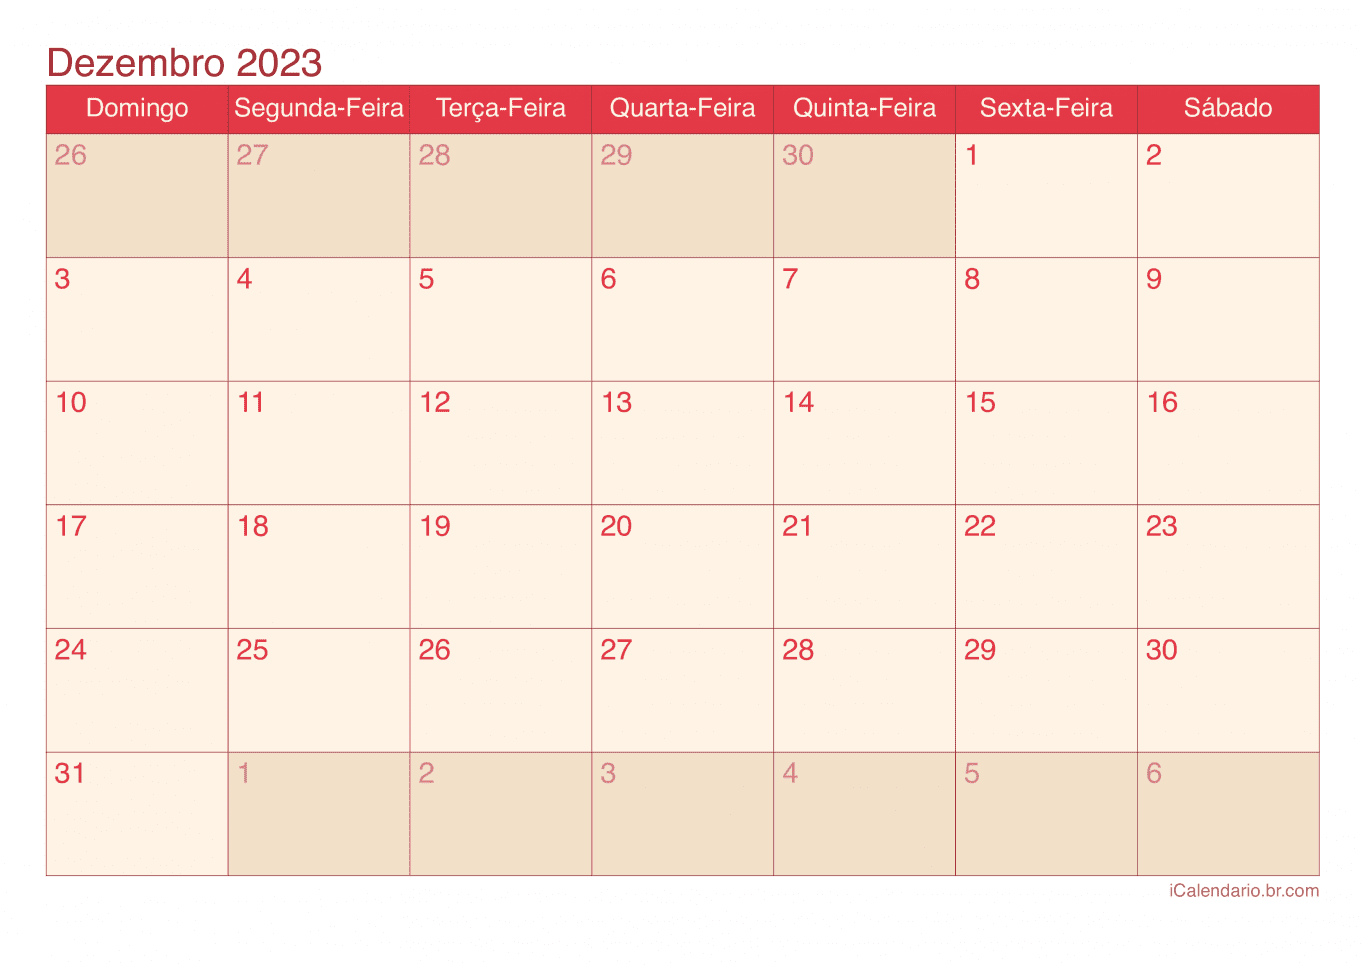 Calendário de dezembro 2023 - Cherry